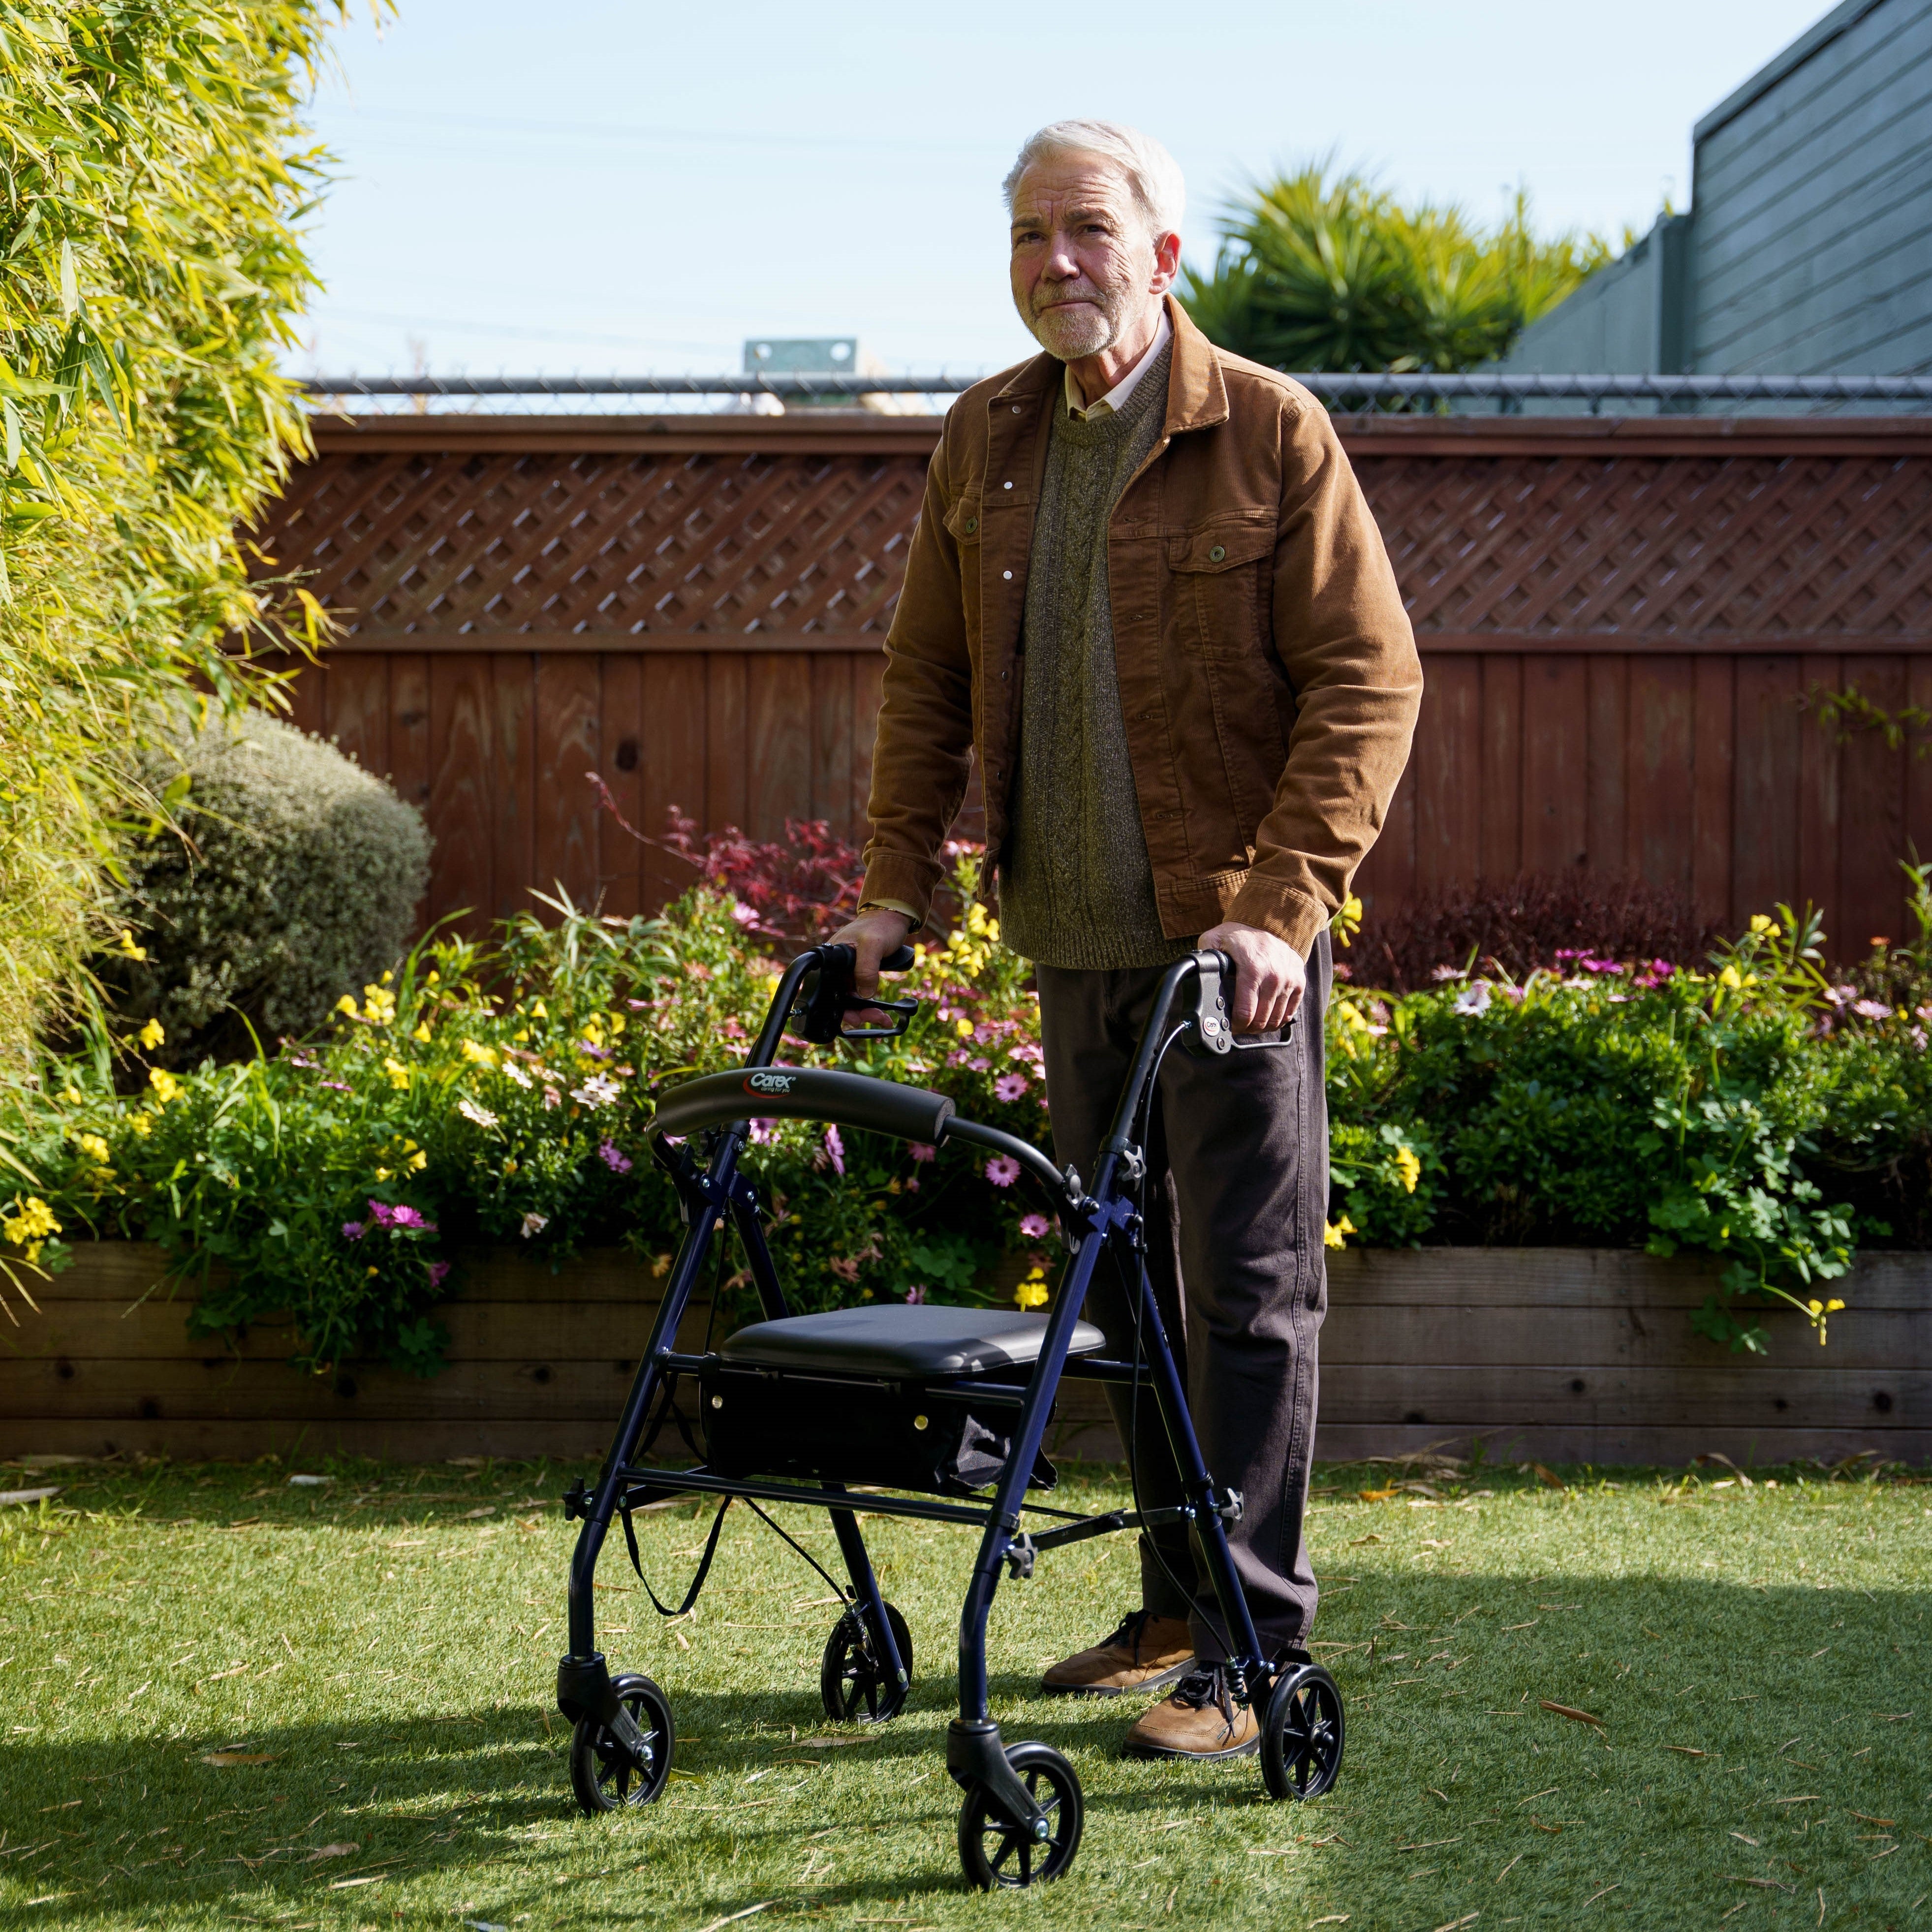 An elderly man using a rollator on grass